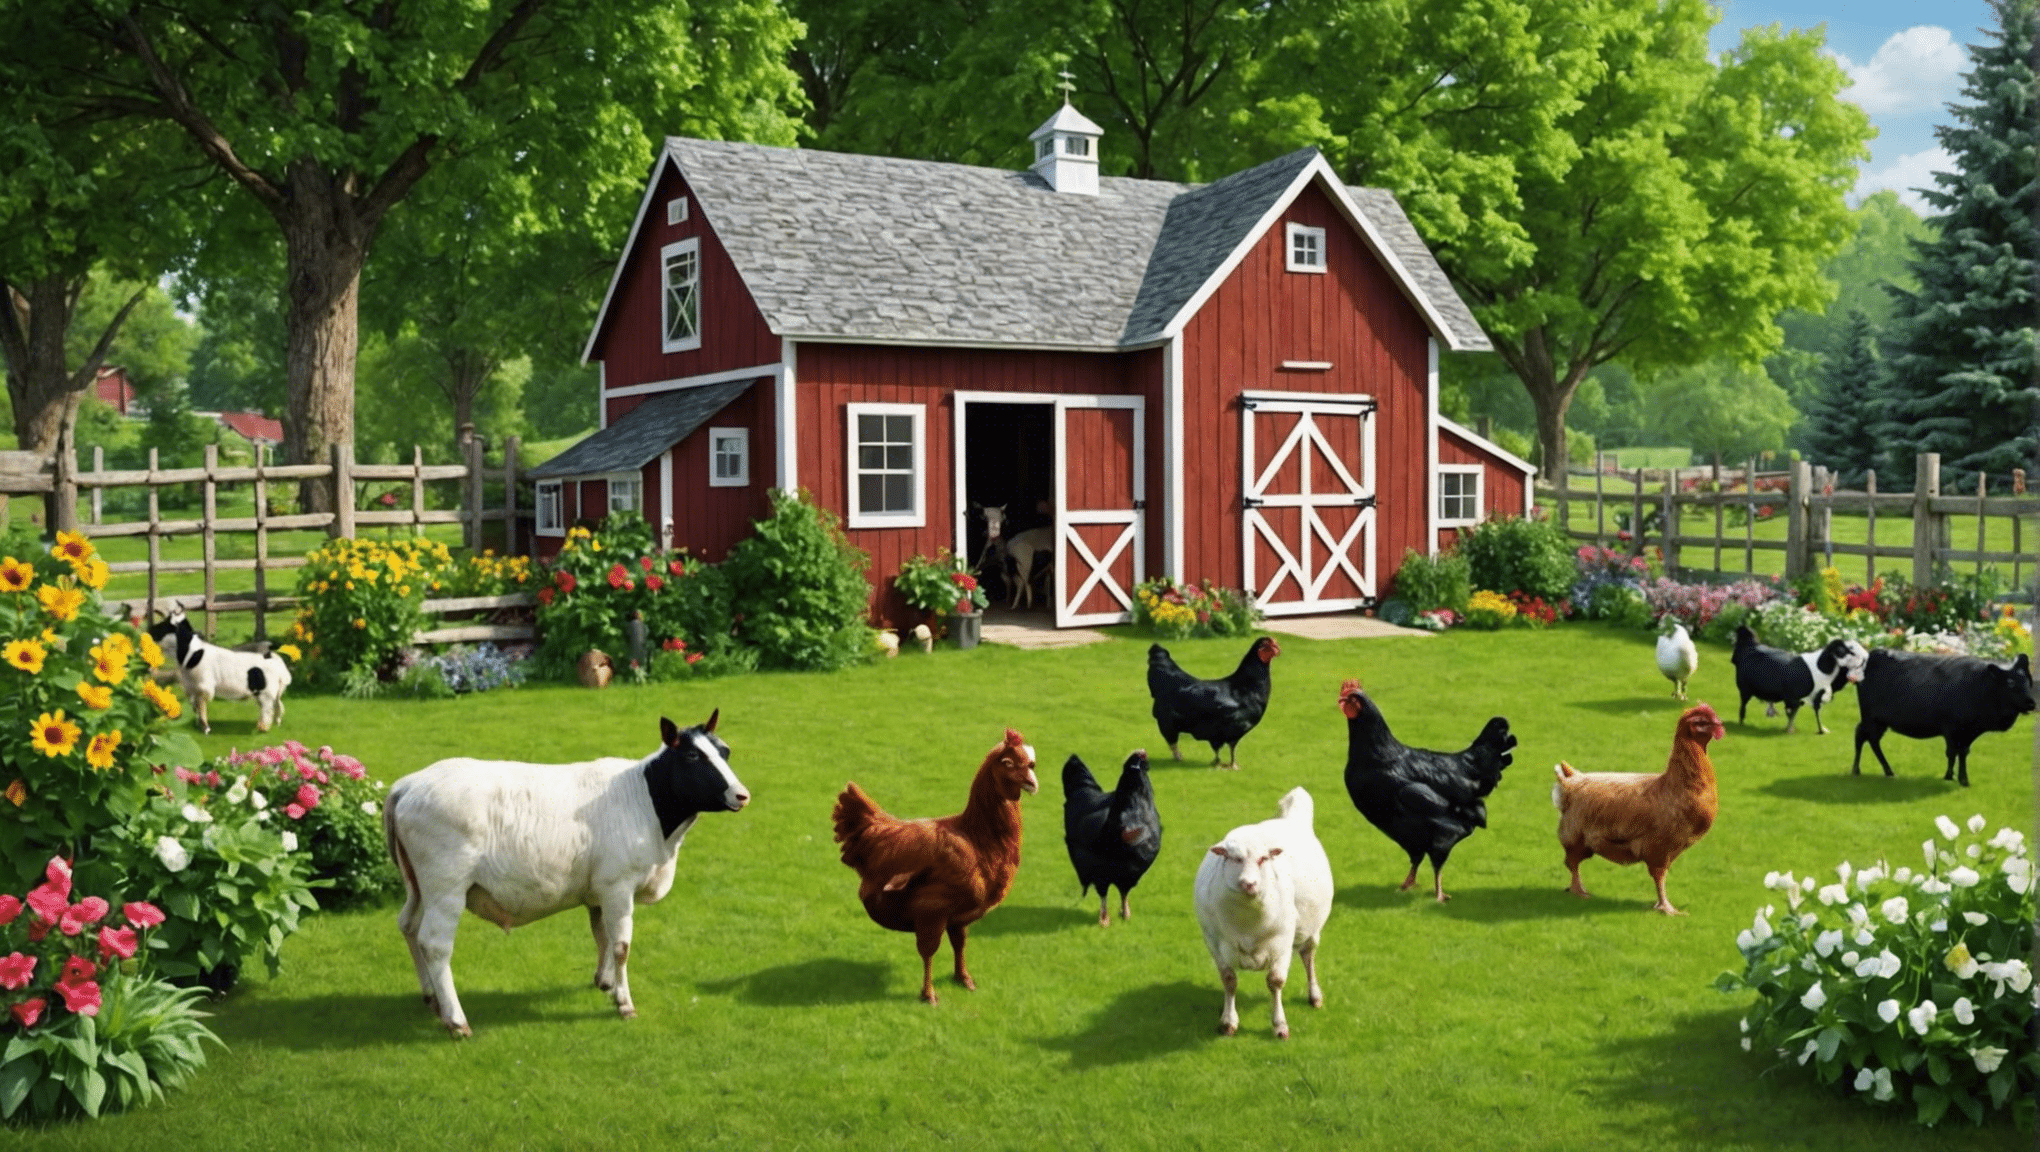 Descubra los beneficios de tener animales de granja en el patio de su hogar y su familia. aprenda cómo criar, cuidar y disfrutar los animales de granja en su patio trasero.